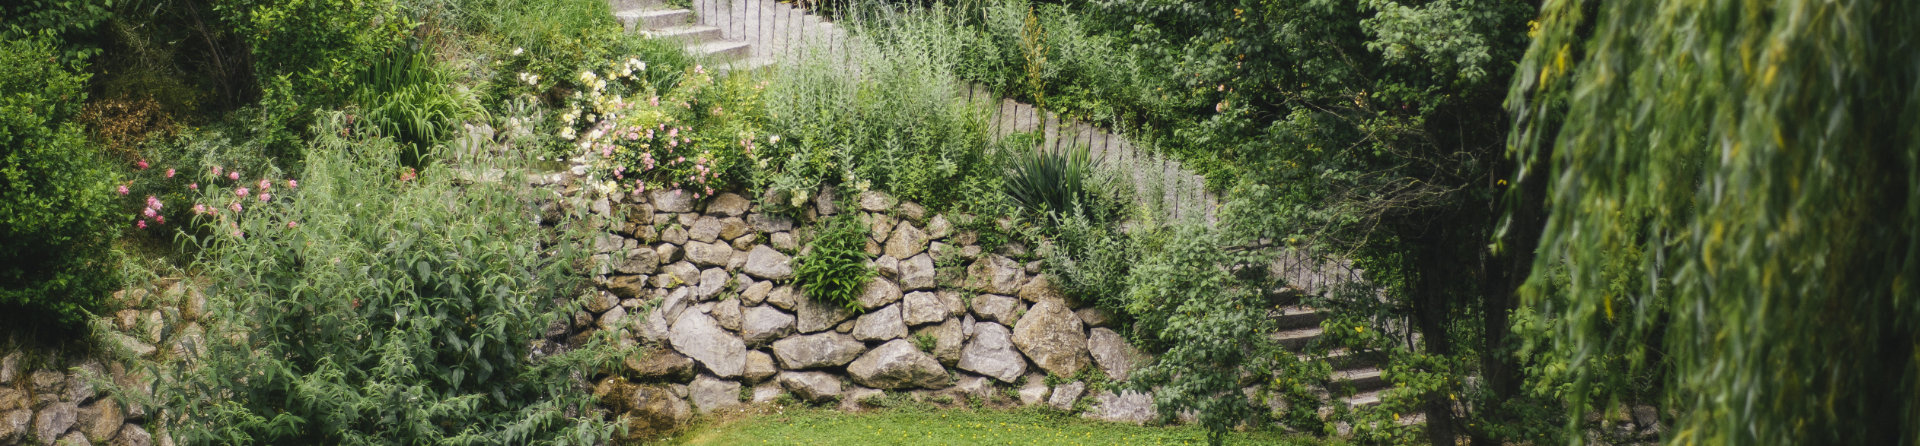 Gartenpflege Steinmauer mit Stufen 1920x447.jpg